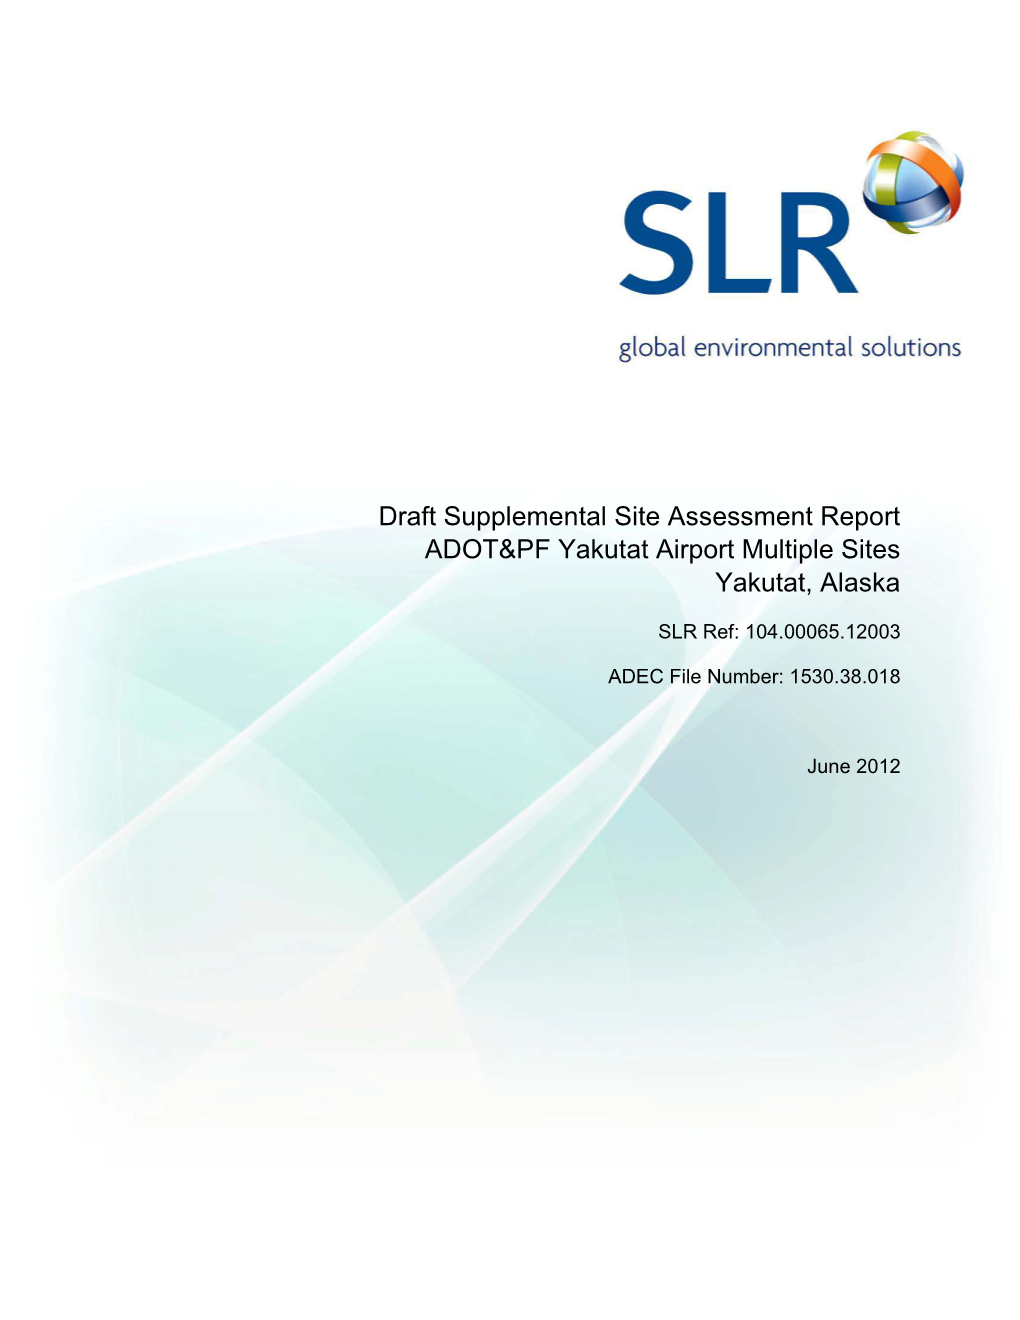 DRAFT Supplemental Site Assessment Report, Yakutat Airport